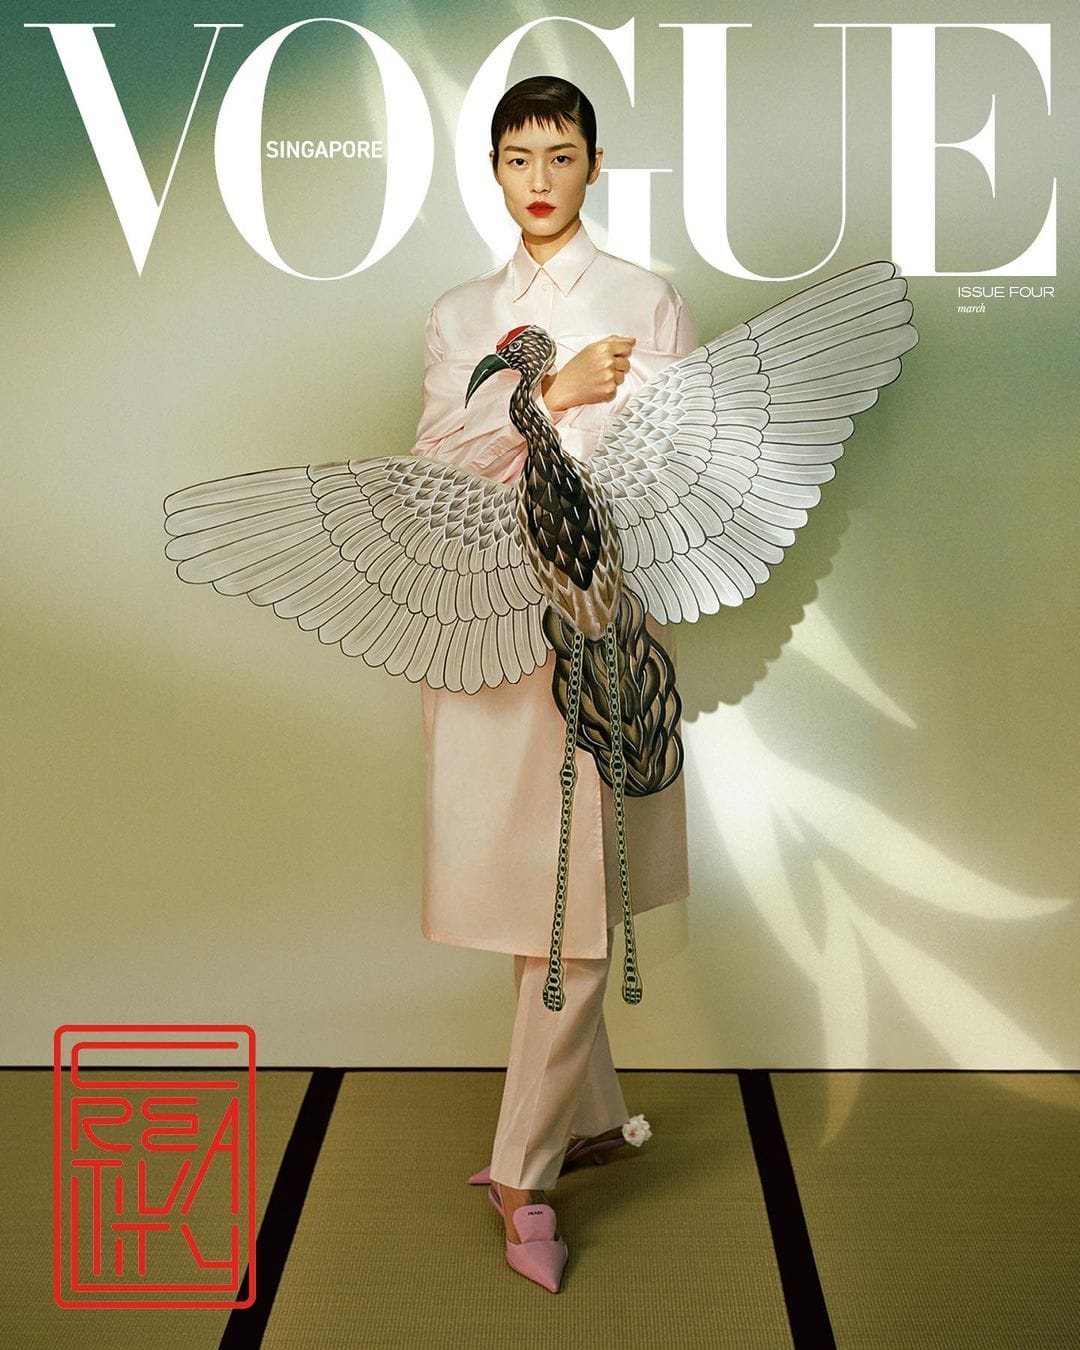 couverture du magazine de mode Vogue réalisée par le photographe chinois Leslie Zhang